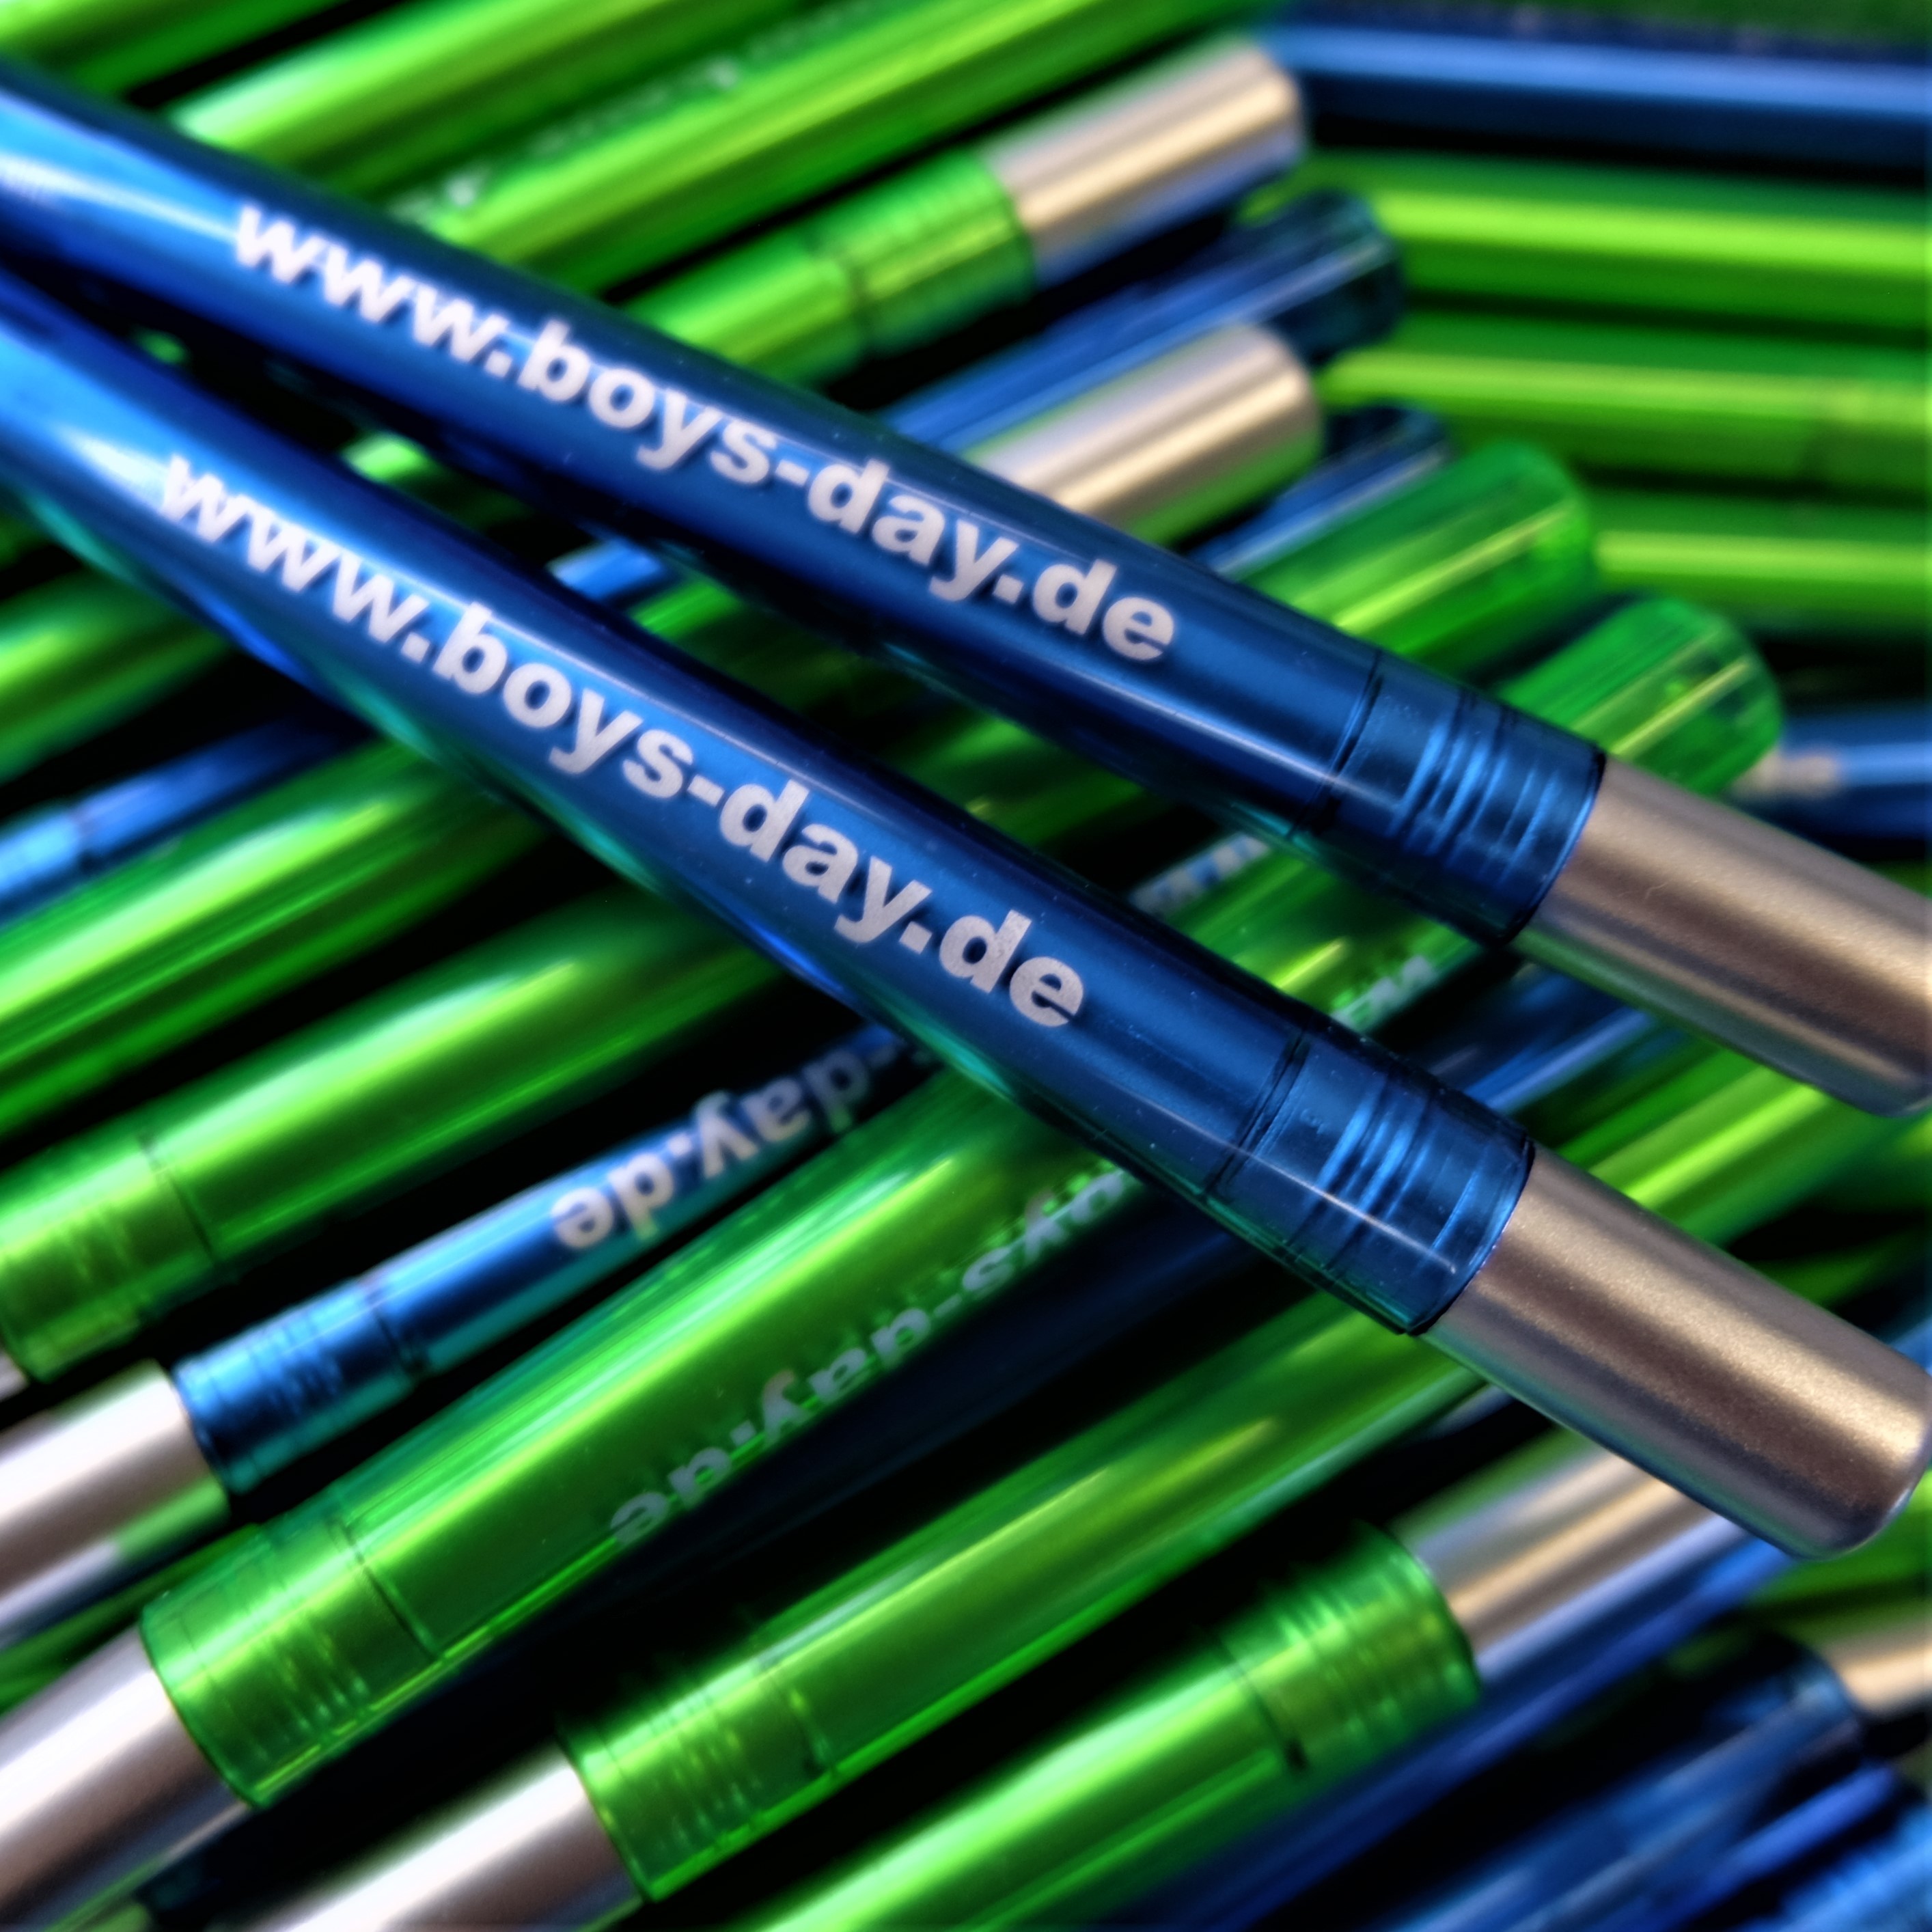 Boys'Day-Kugelschreiber, | 50 Drehkugelschreiber mit seitlichem Aufdruck "www.boys-day.de". Erhältlich in den Farben grün und blau.